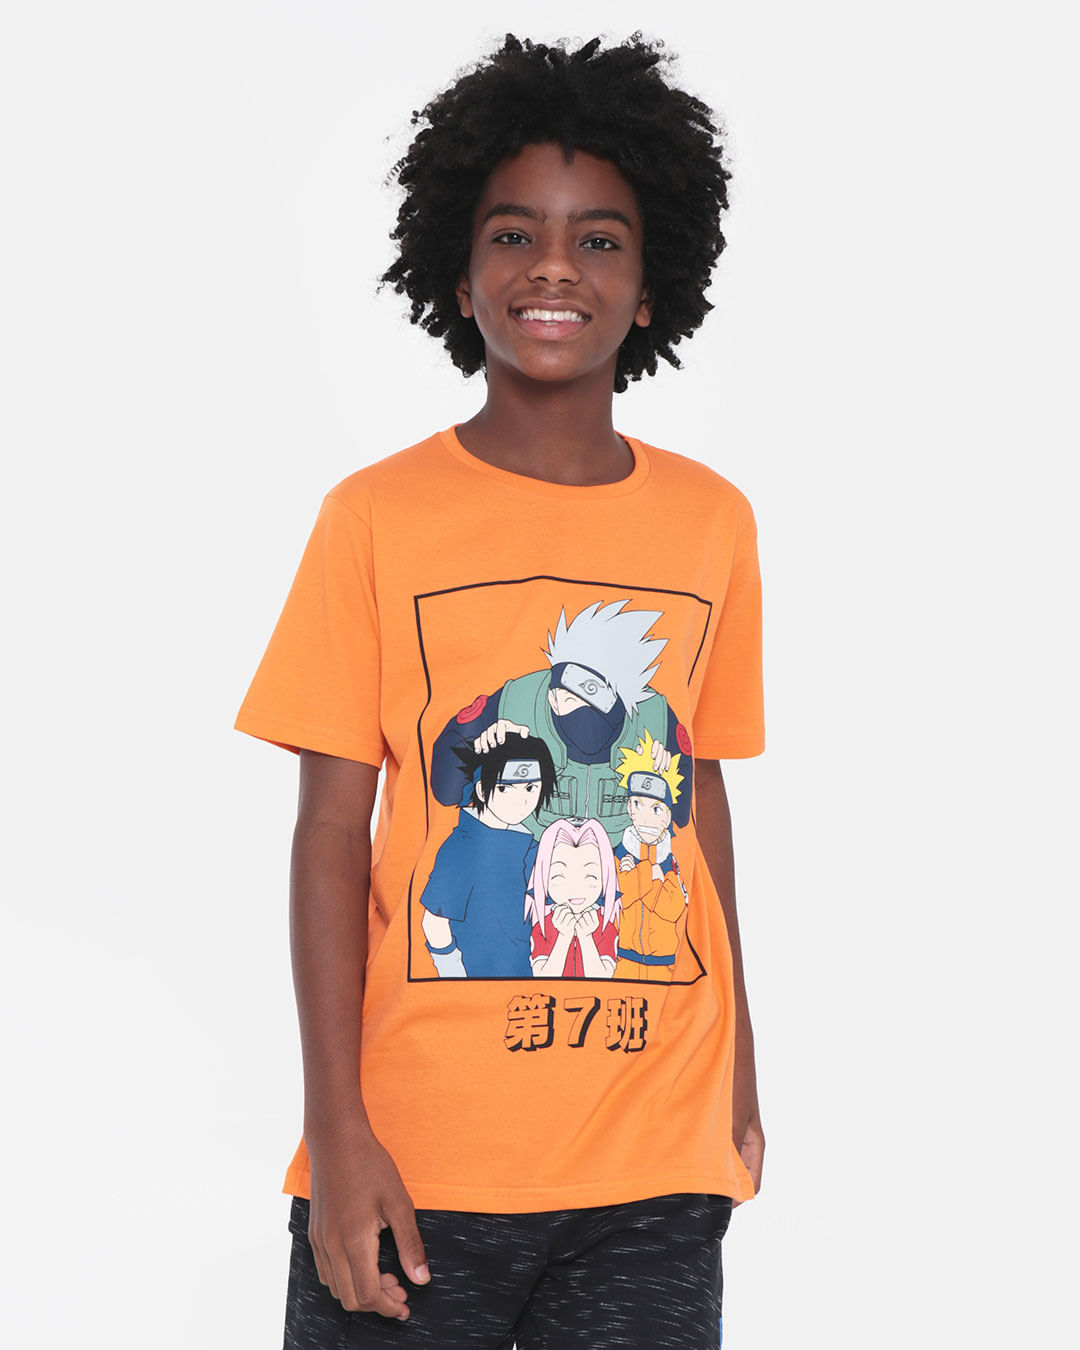 Camiseta-Juvenil-Estampa-Naruto-Laranja